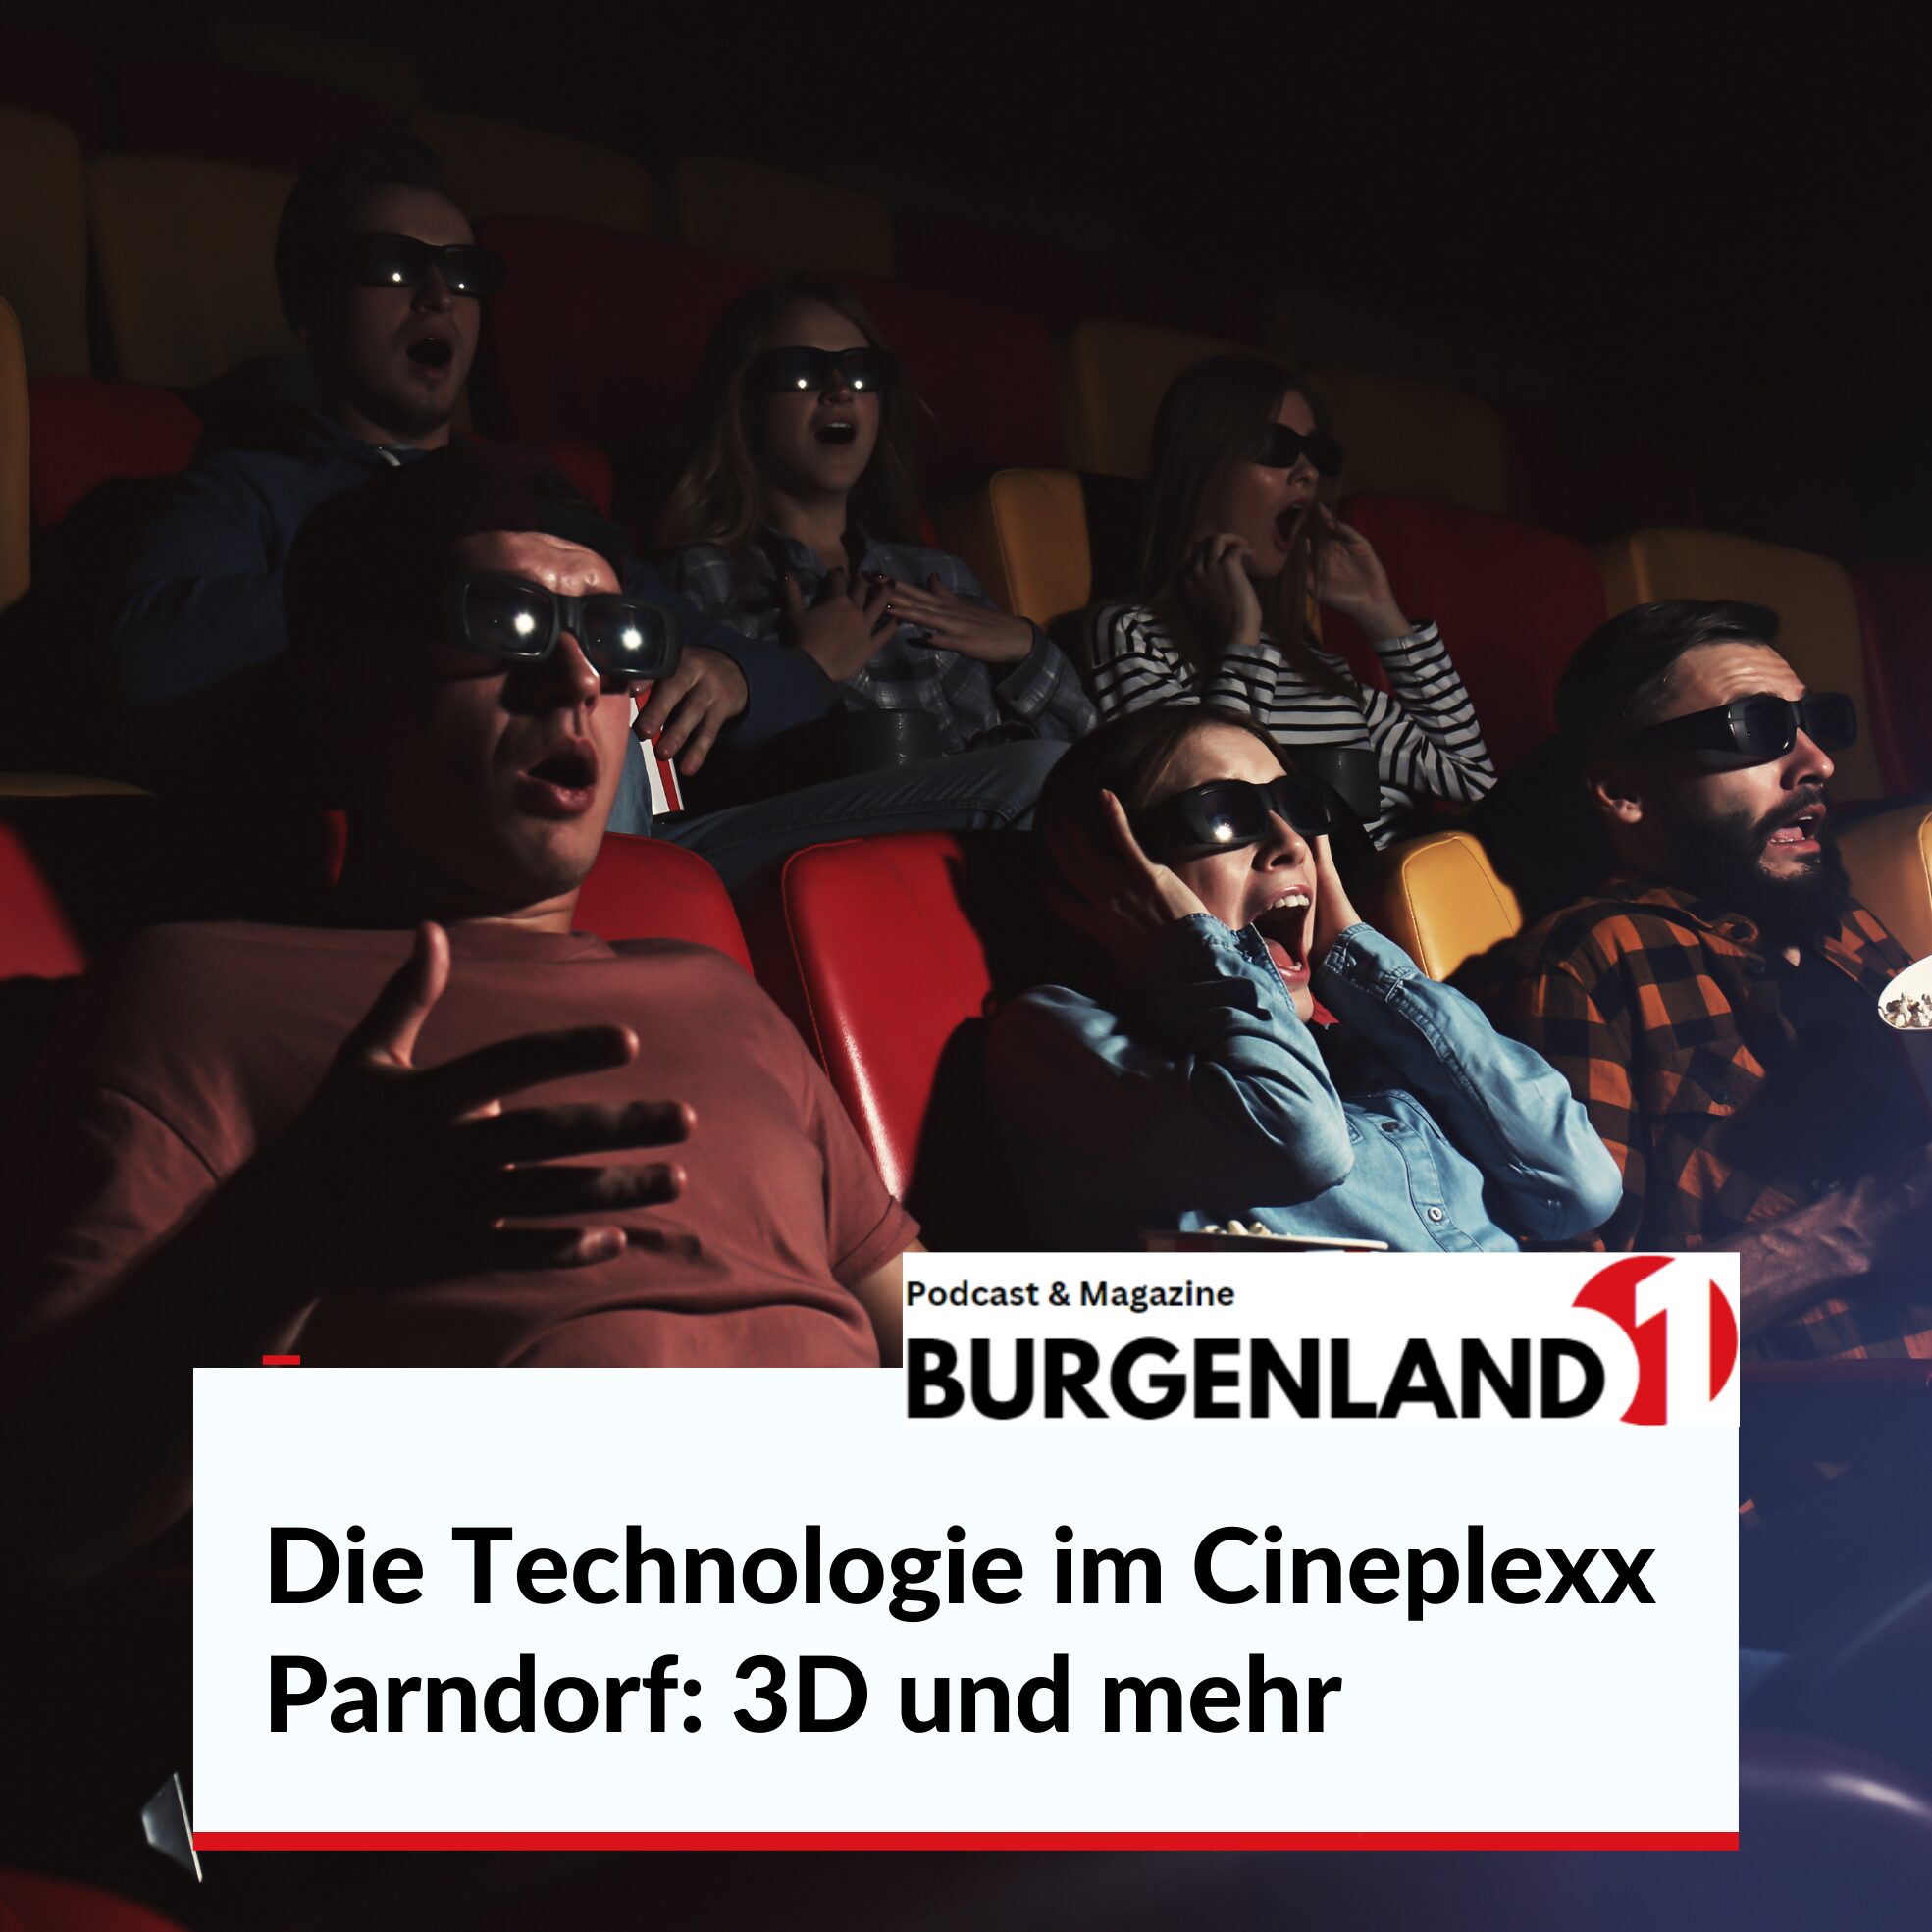 Die Technologie im Cineplexx Parndorf: 3D und mehr